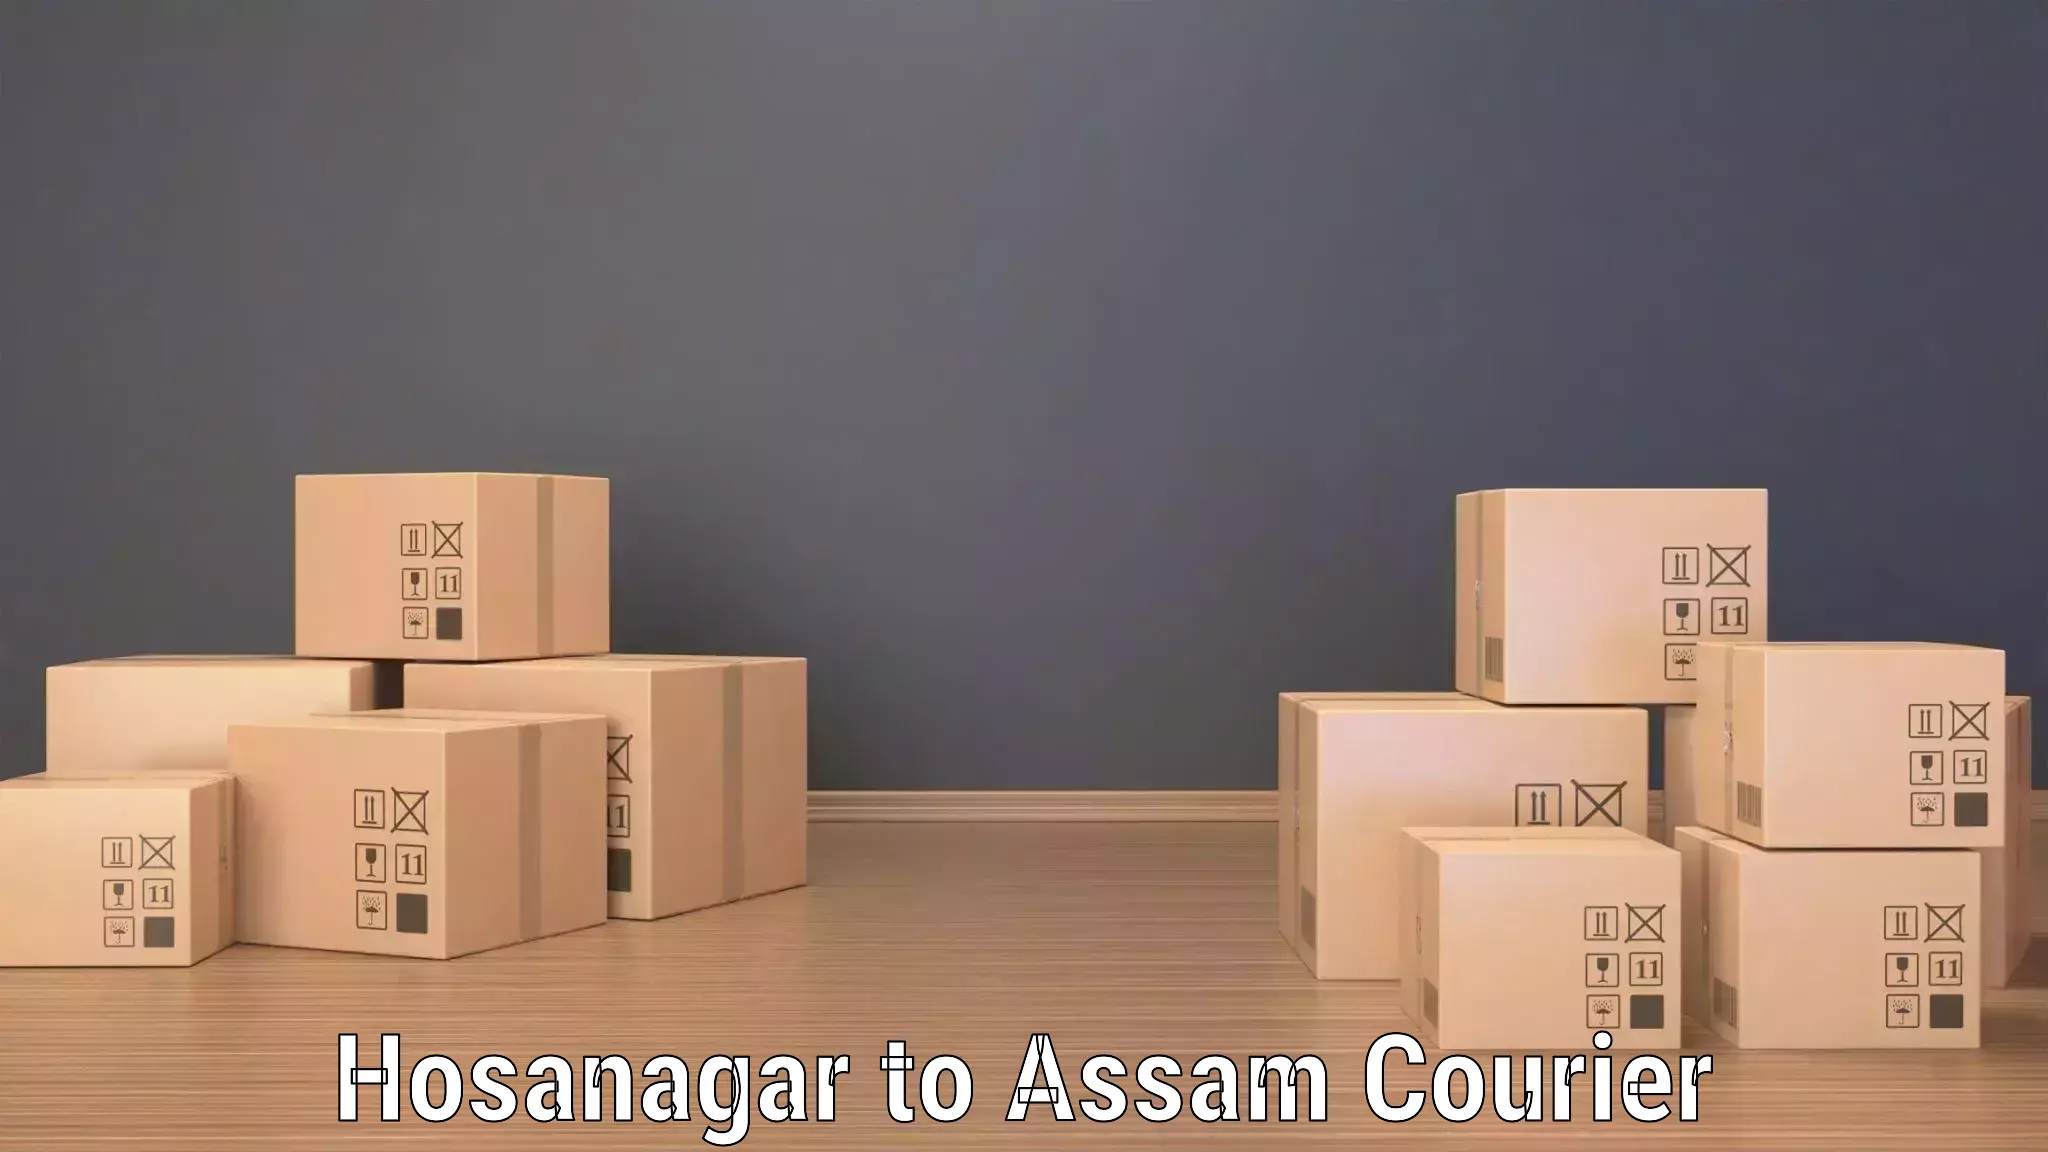 Quick booking process Hosanagar to Lala Assam